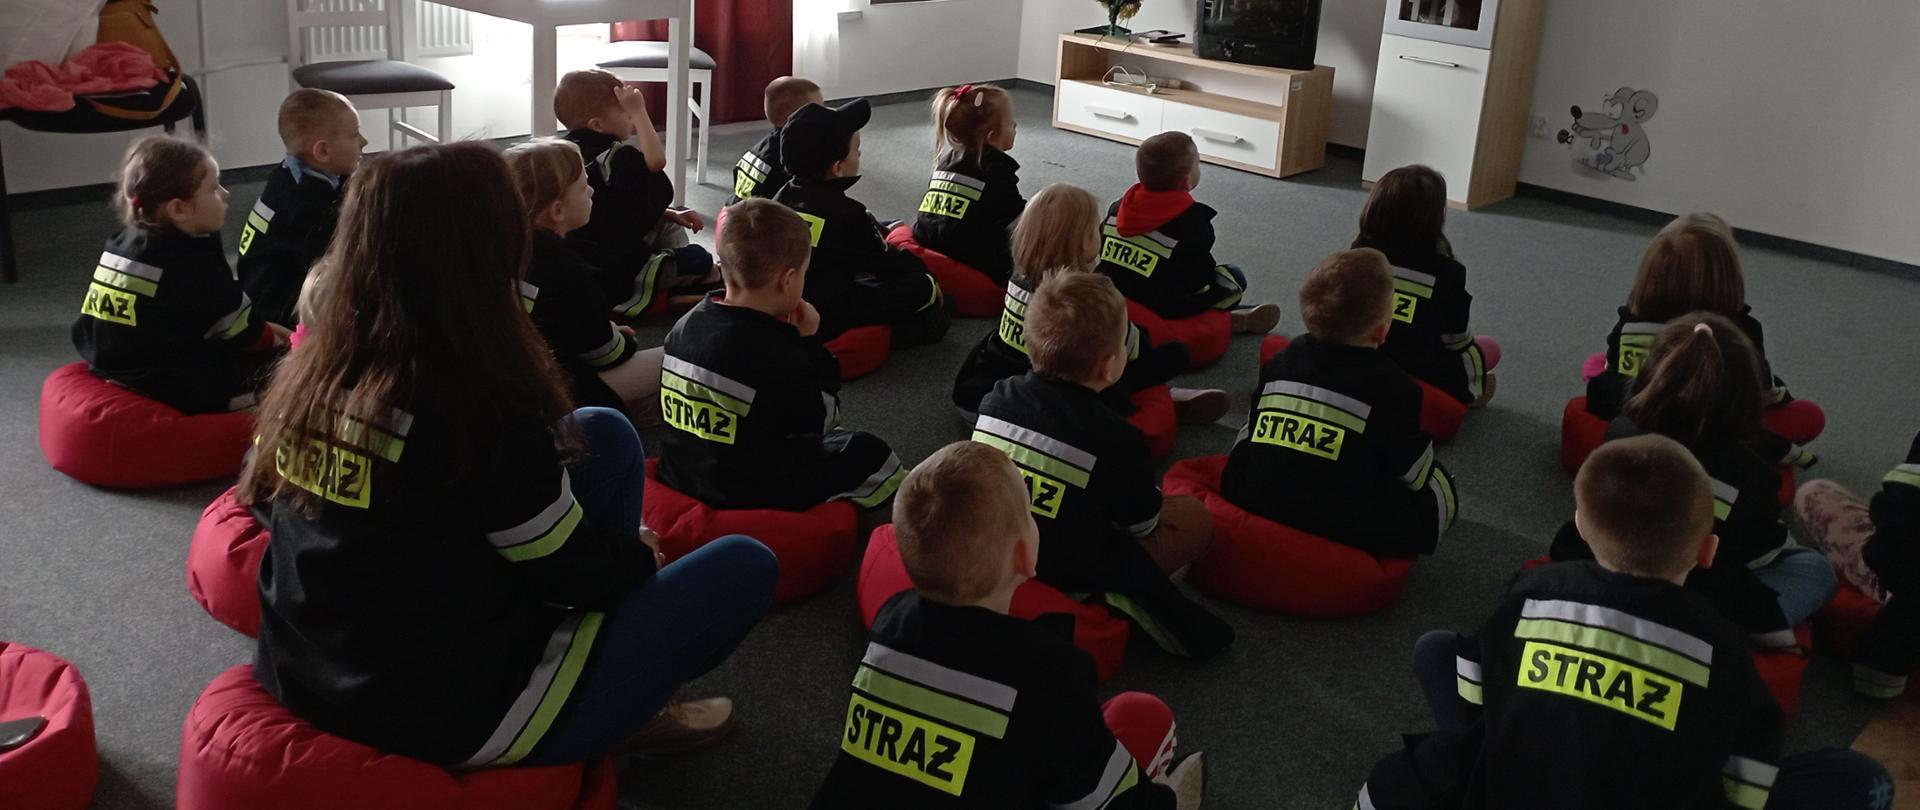 Na zdjęciu przedstawiono zajęcia w sali Ognik. Dzieci w przebraniu strażaka siedząc wraz z opiekunem na podłodze oglądają film edukacyjny.